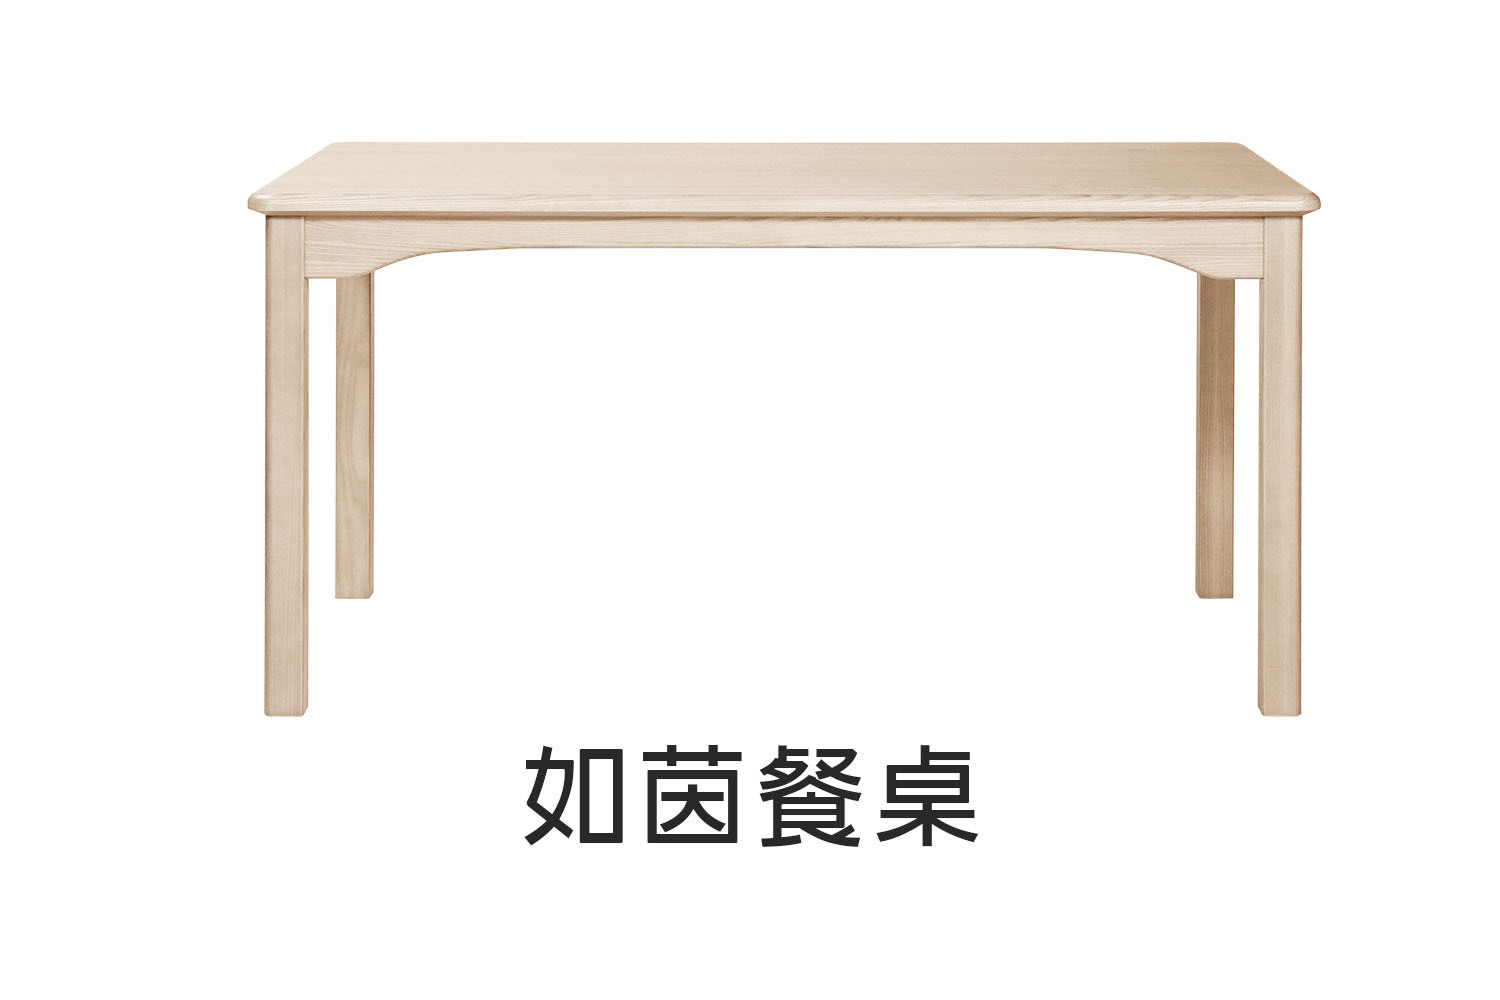 北歐風如茵實木餐桌-150cm 120cm 180cm WRDT007R WRDT010R WRDT011R